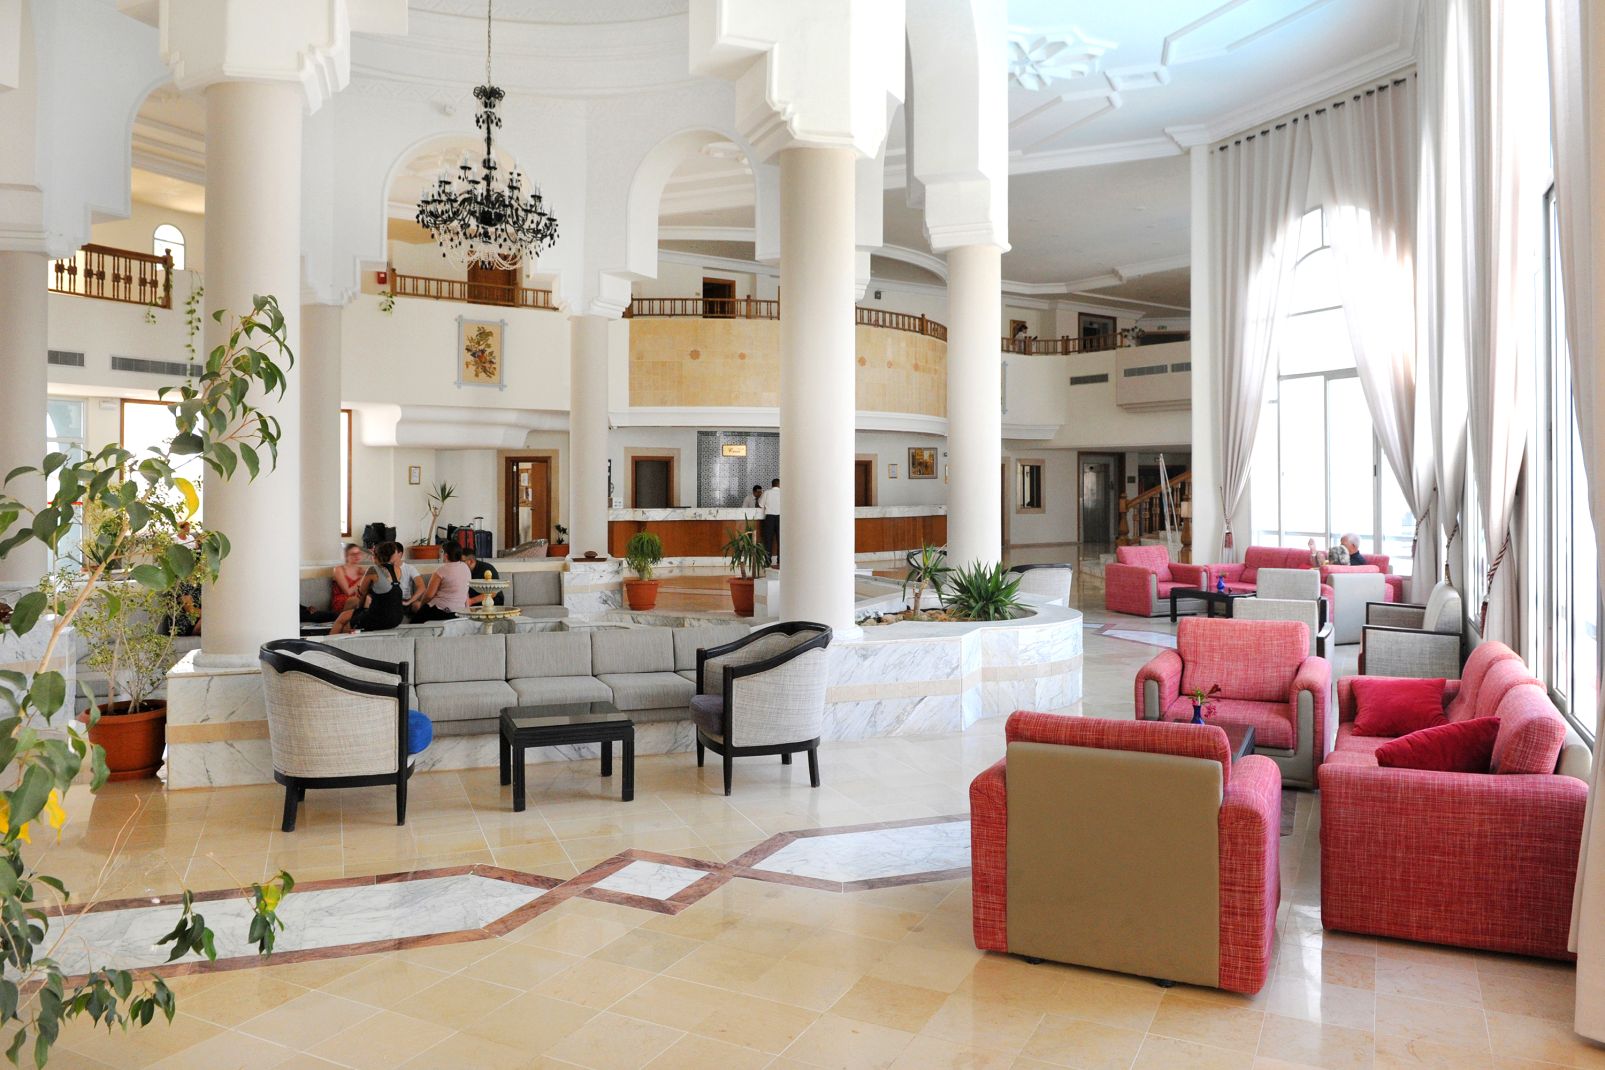 Djerba Golf Resort & Spa